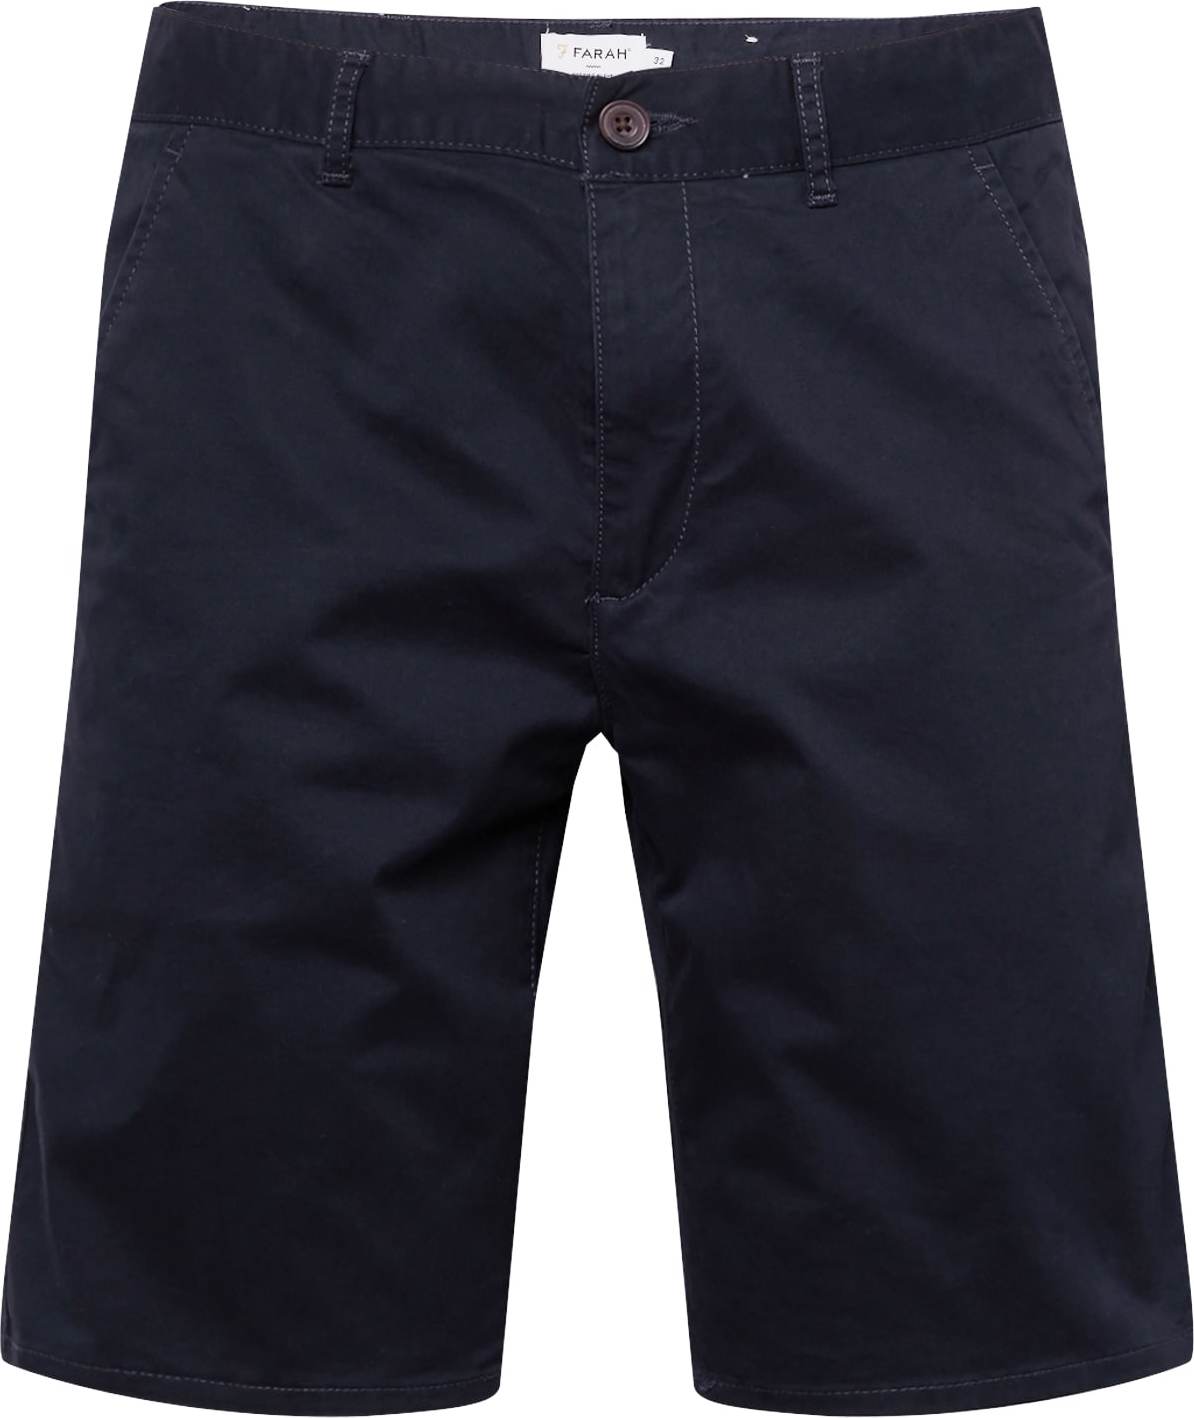 FARAH Chino kalhoty 'HAWK' námořnická modř